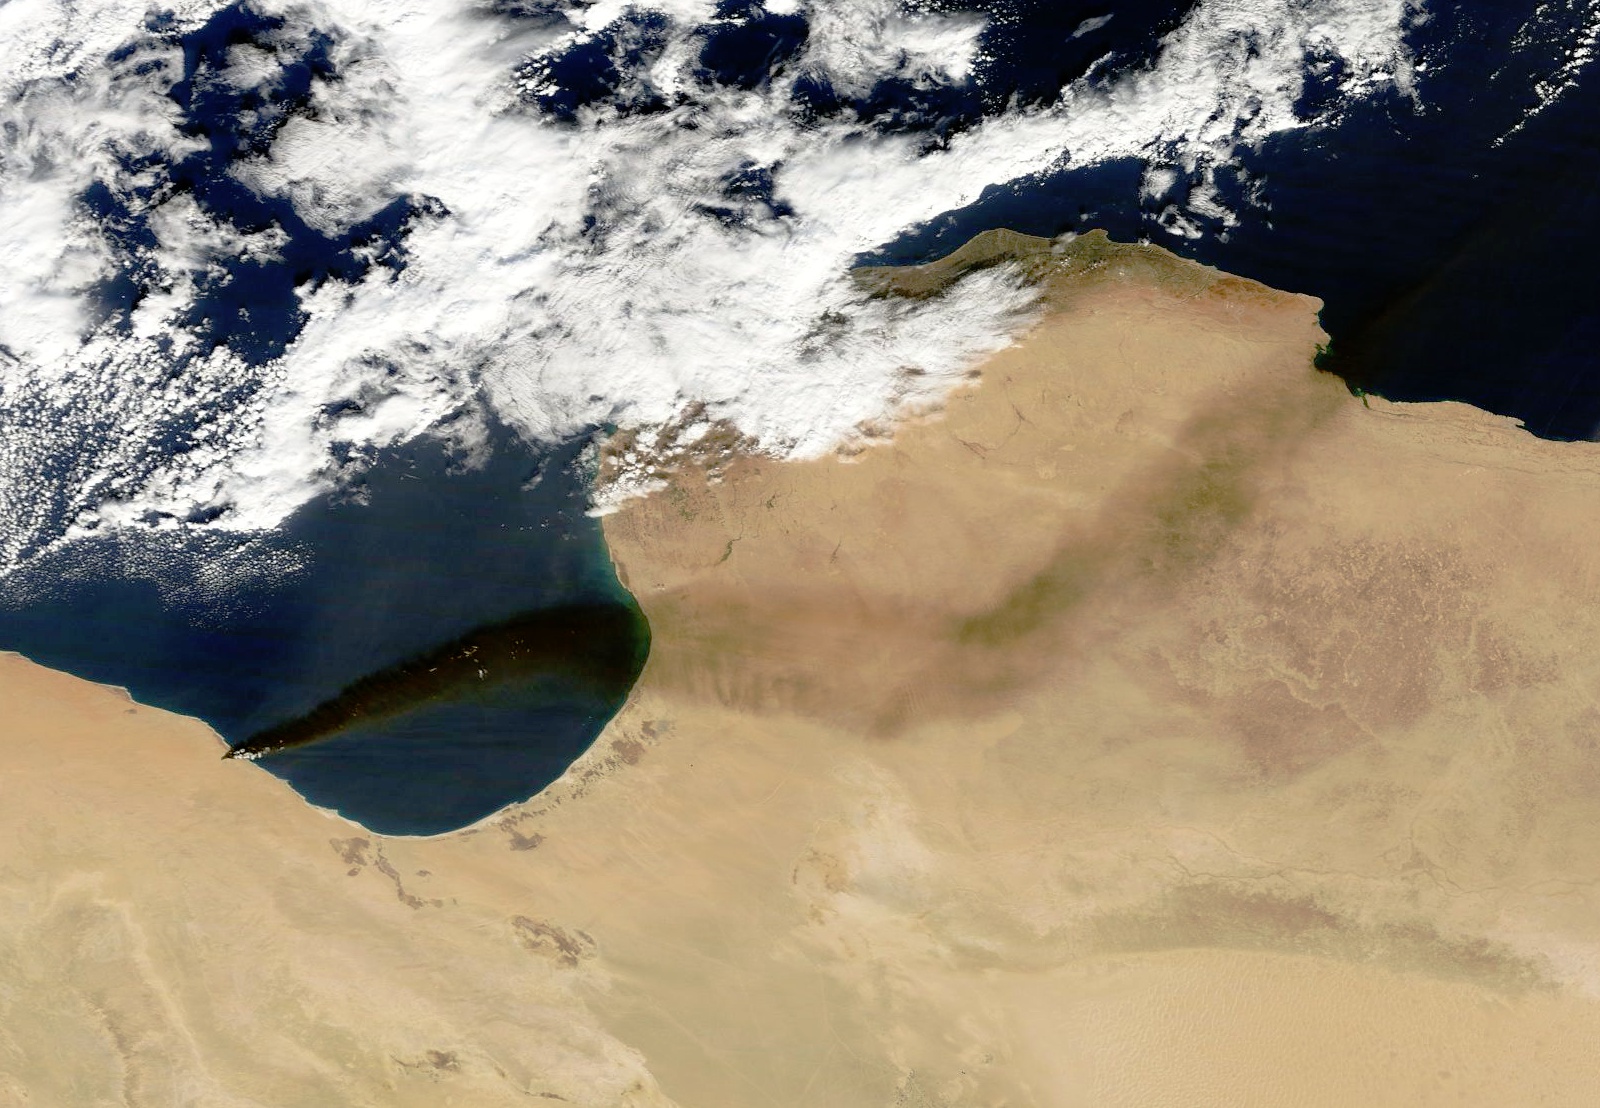 Incendie - Libye - sites pétroliers - Fajr Libya - décembre 2014 - satellite - Terra - MODIS